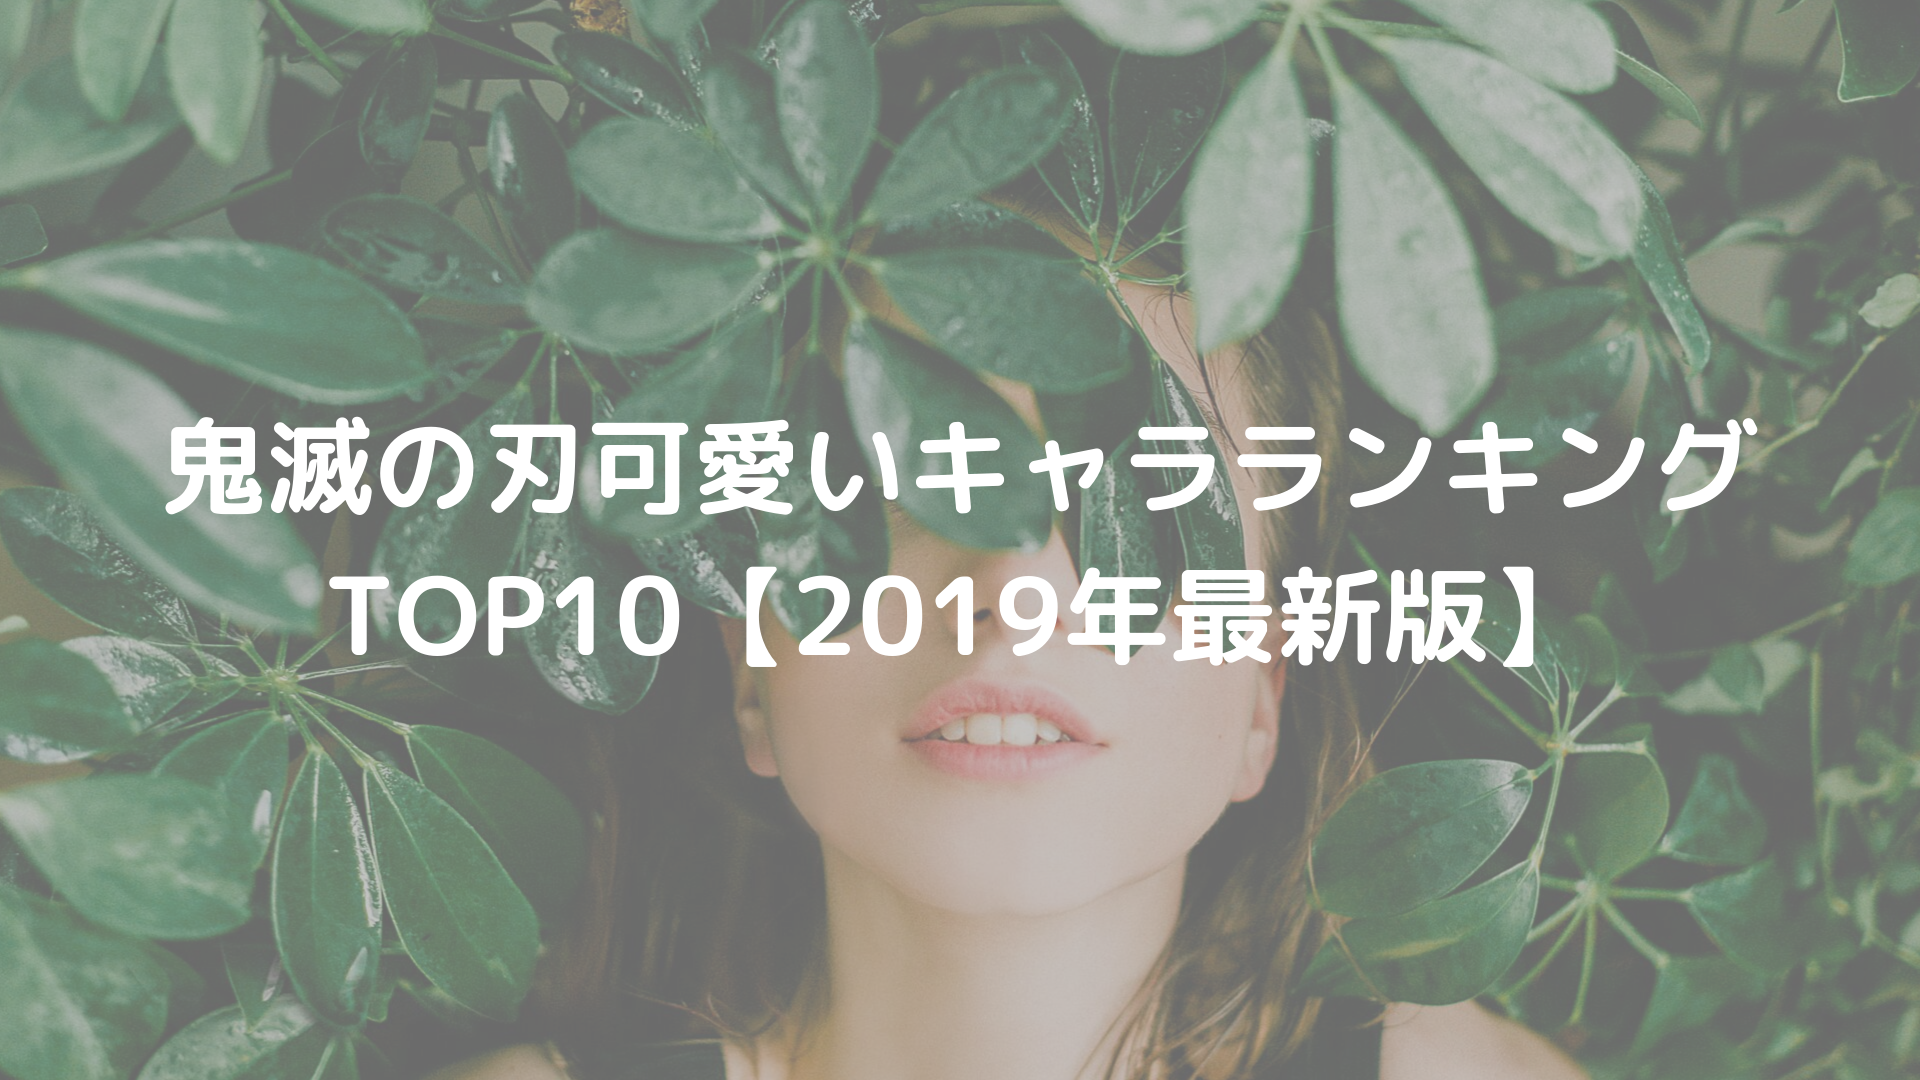 鬼滅の刃の可愛いキャラランキングTOP10【2019年最新版】